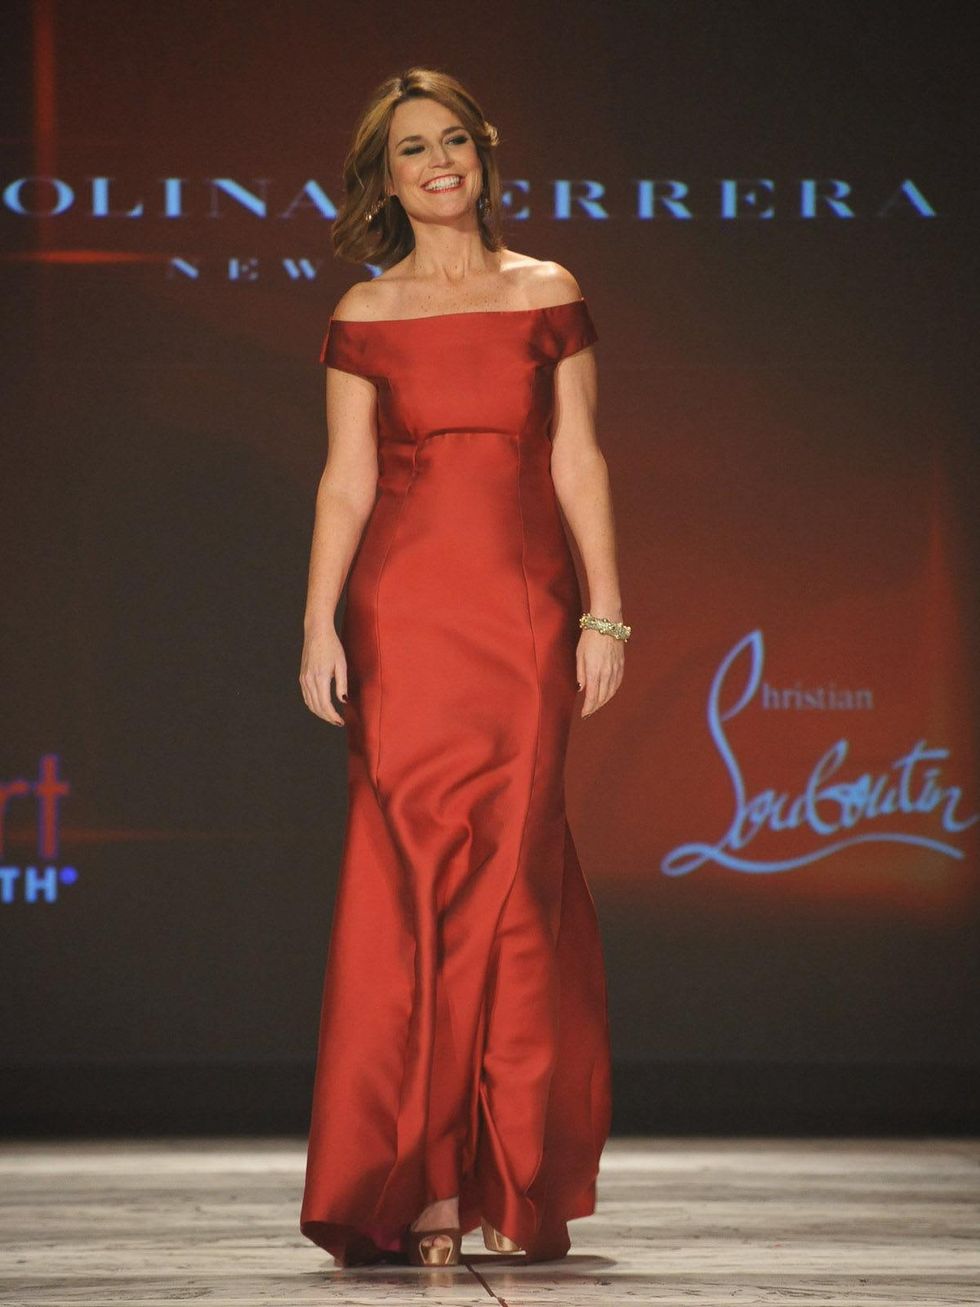 The Heart Truth 2013 Fashion Show, Savannah Guthrie wearing Carolina Herrera